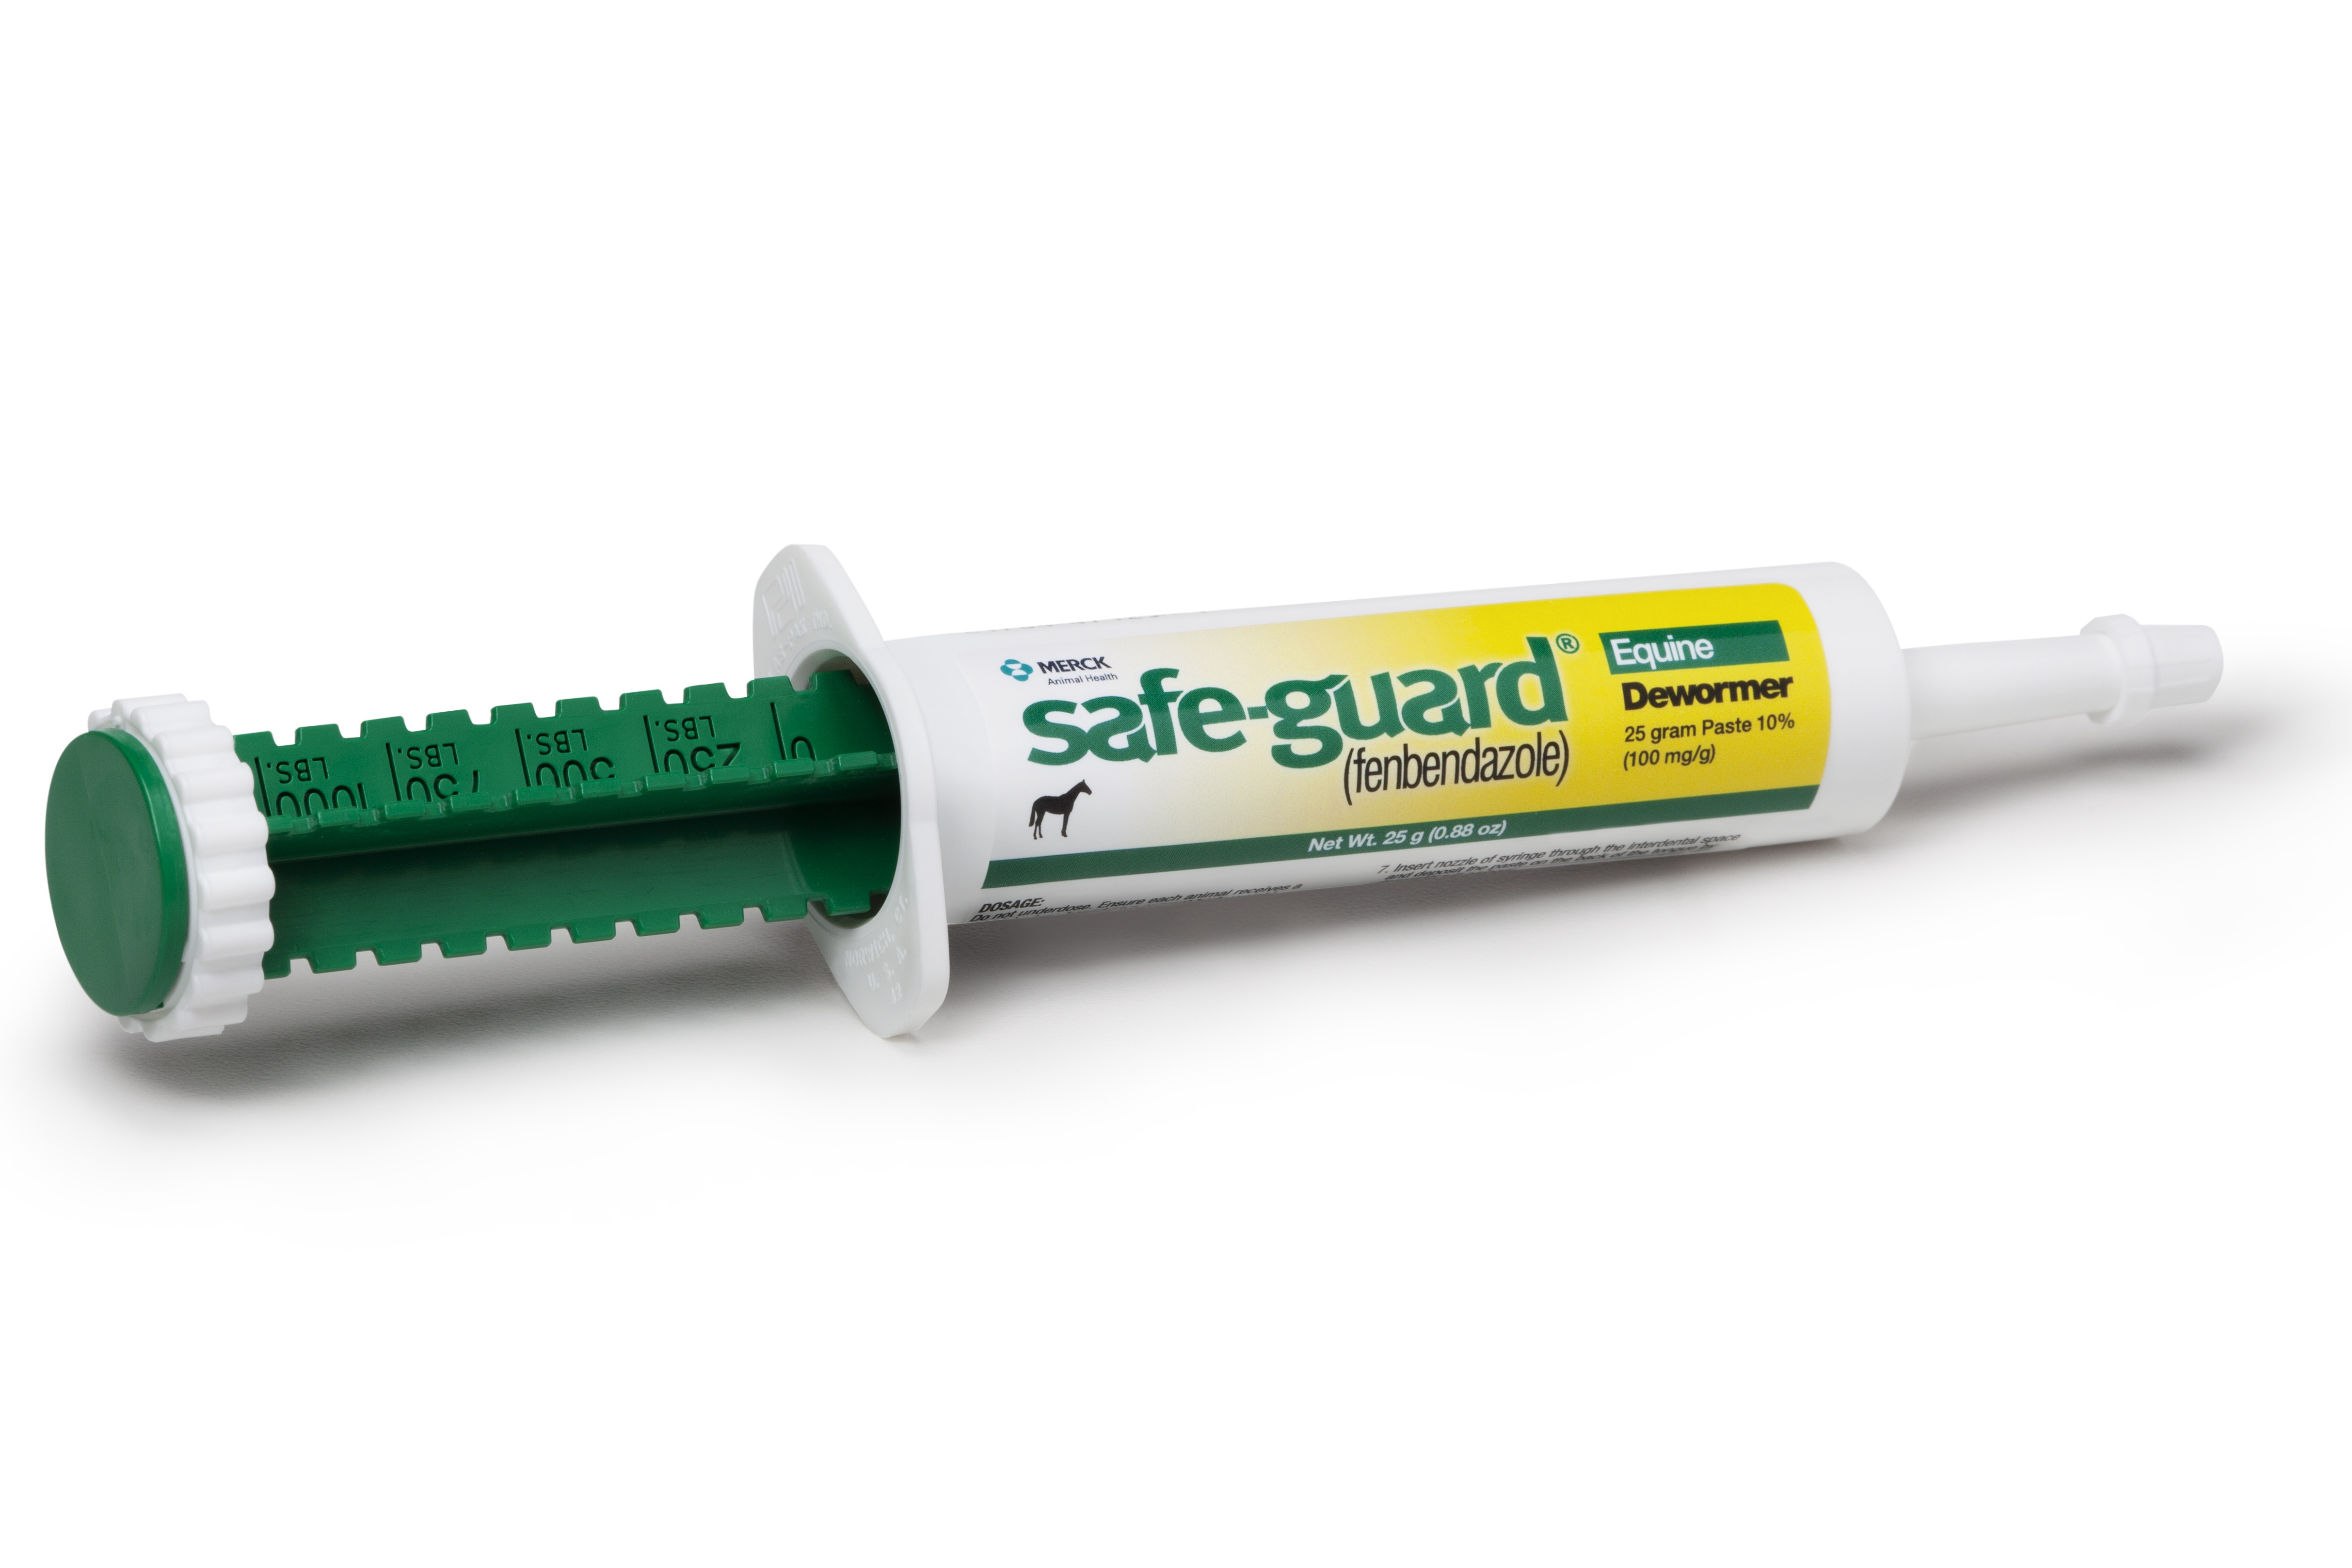 Safe-Guard Equine Dewormer Paste, 25 g tube